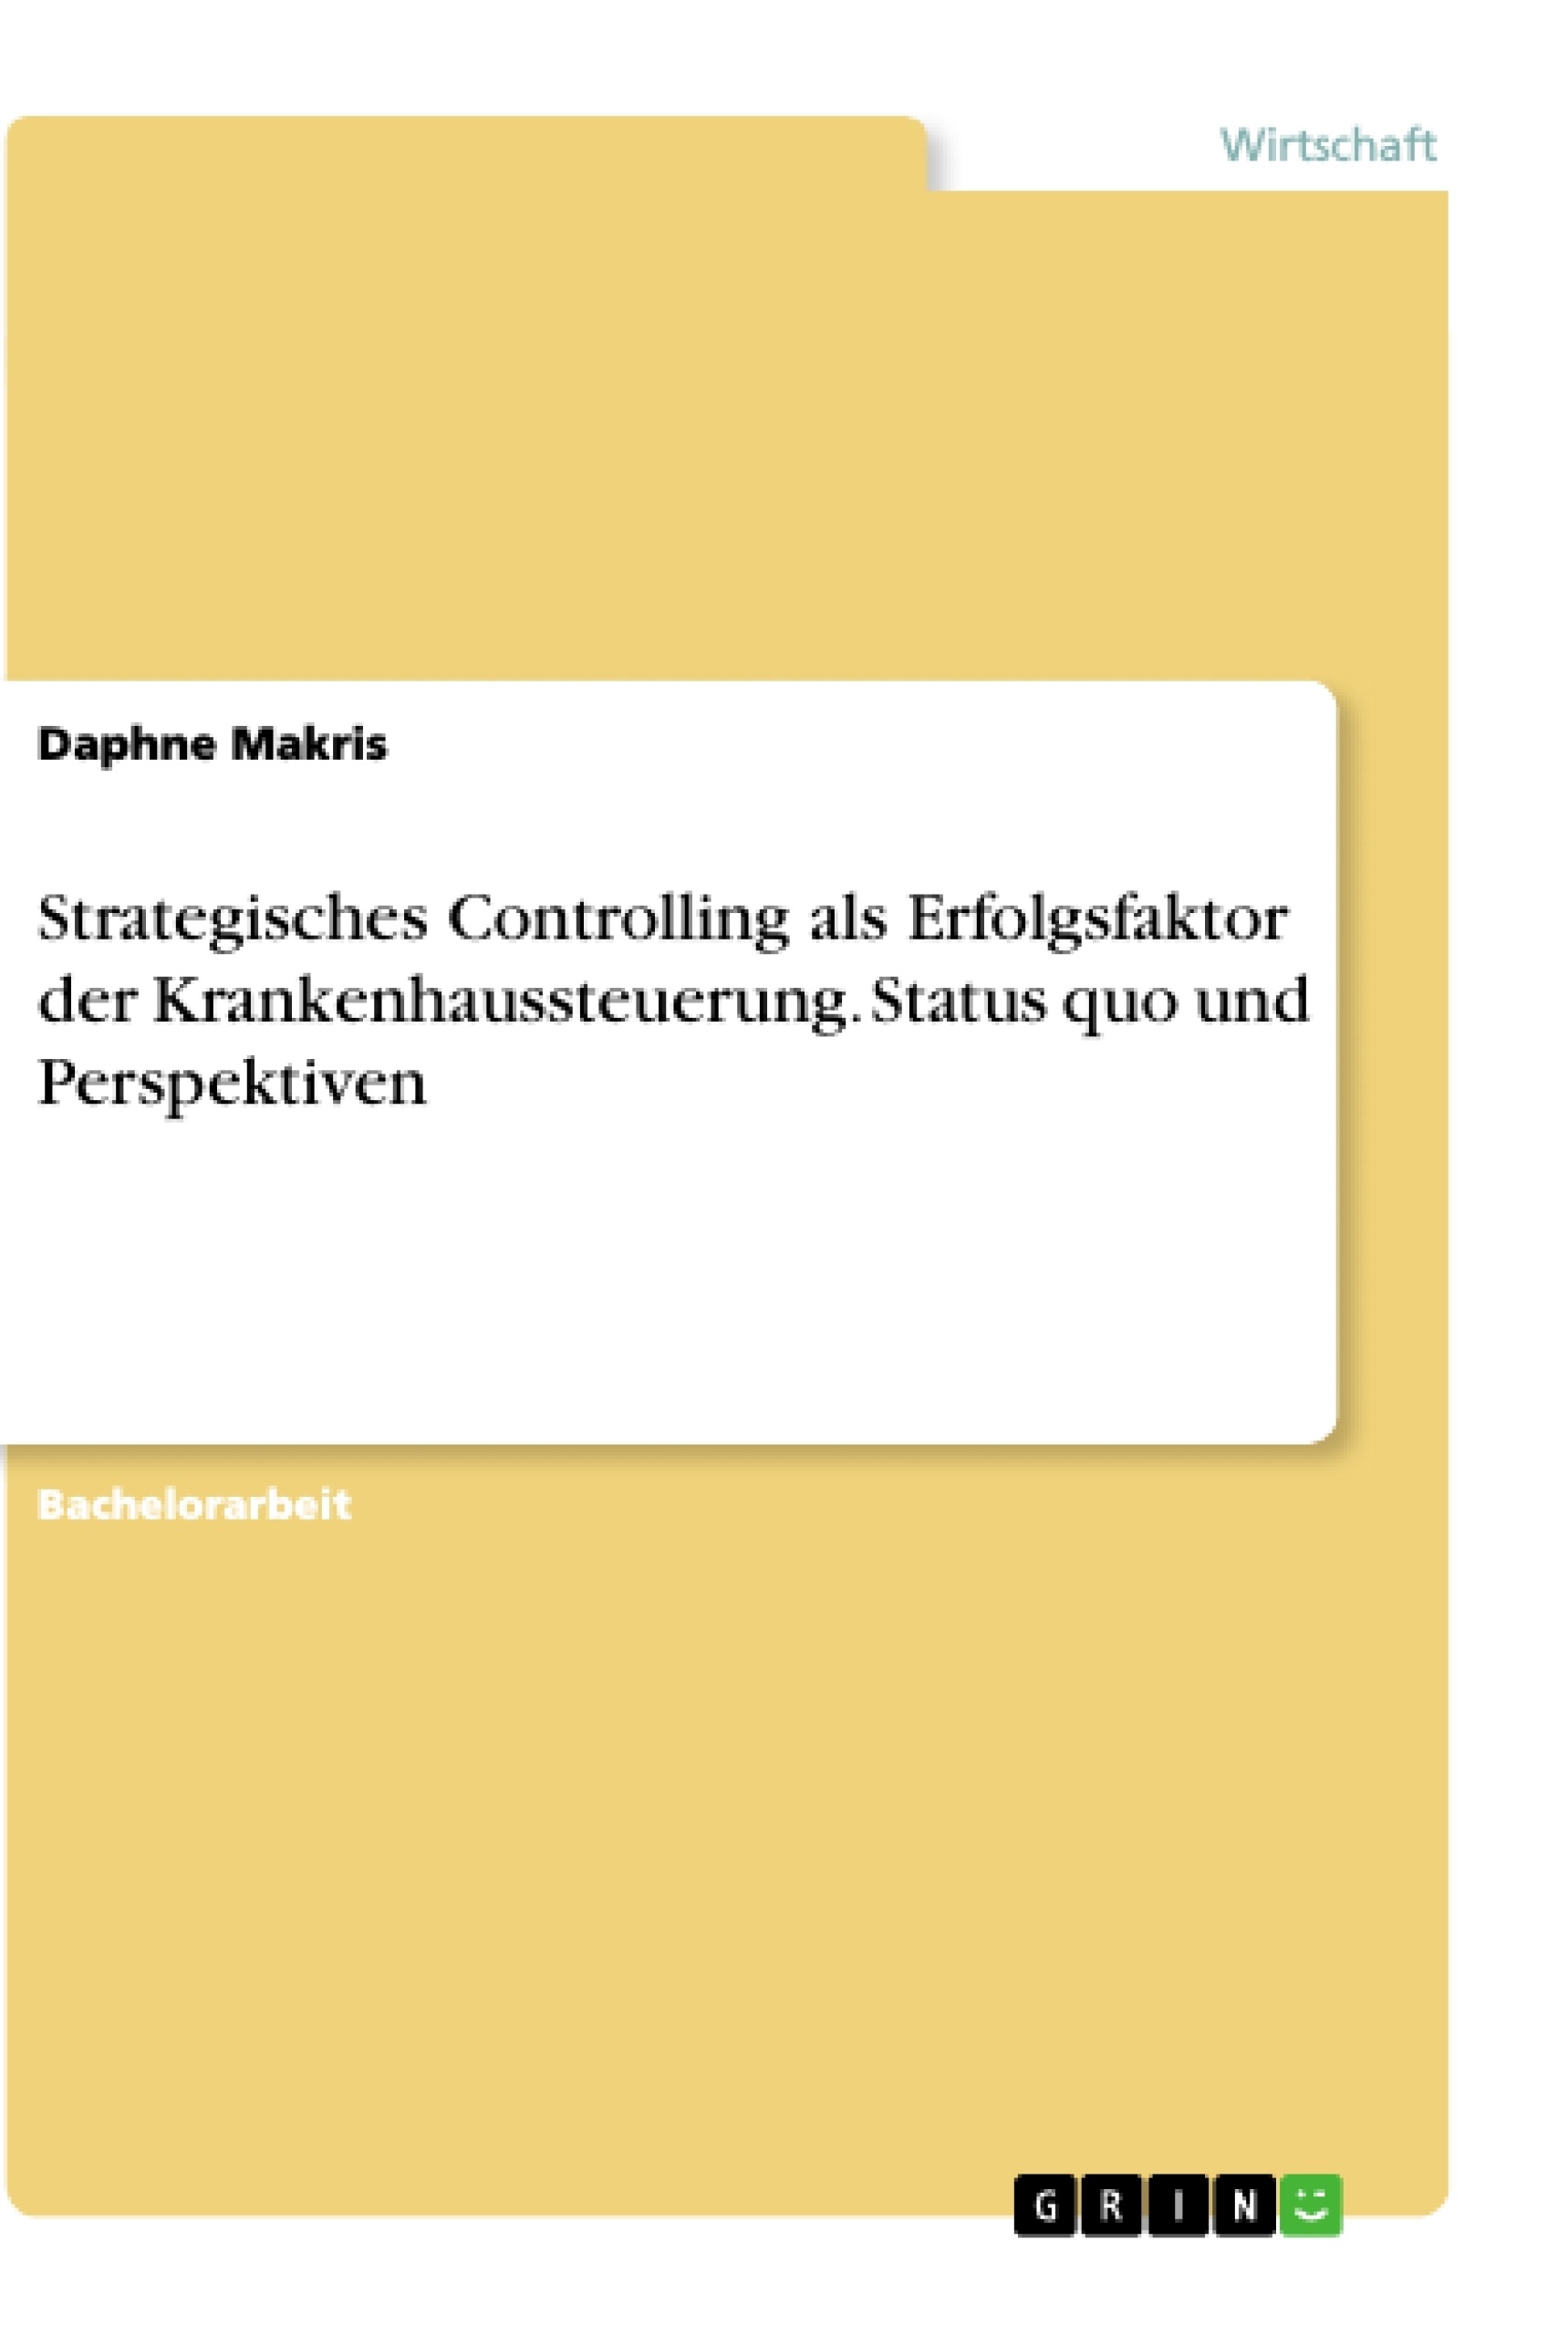 Title: Strategisches Controlling als Erfolgsfaktor der Krankenhaussteuerung. Status quo und Perspektiven